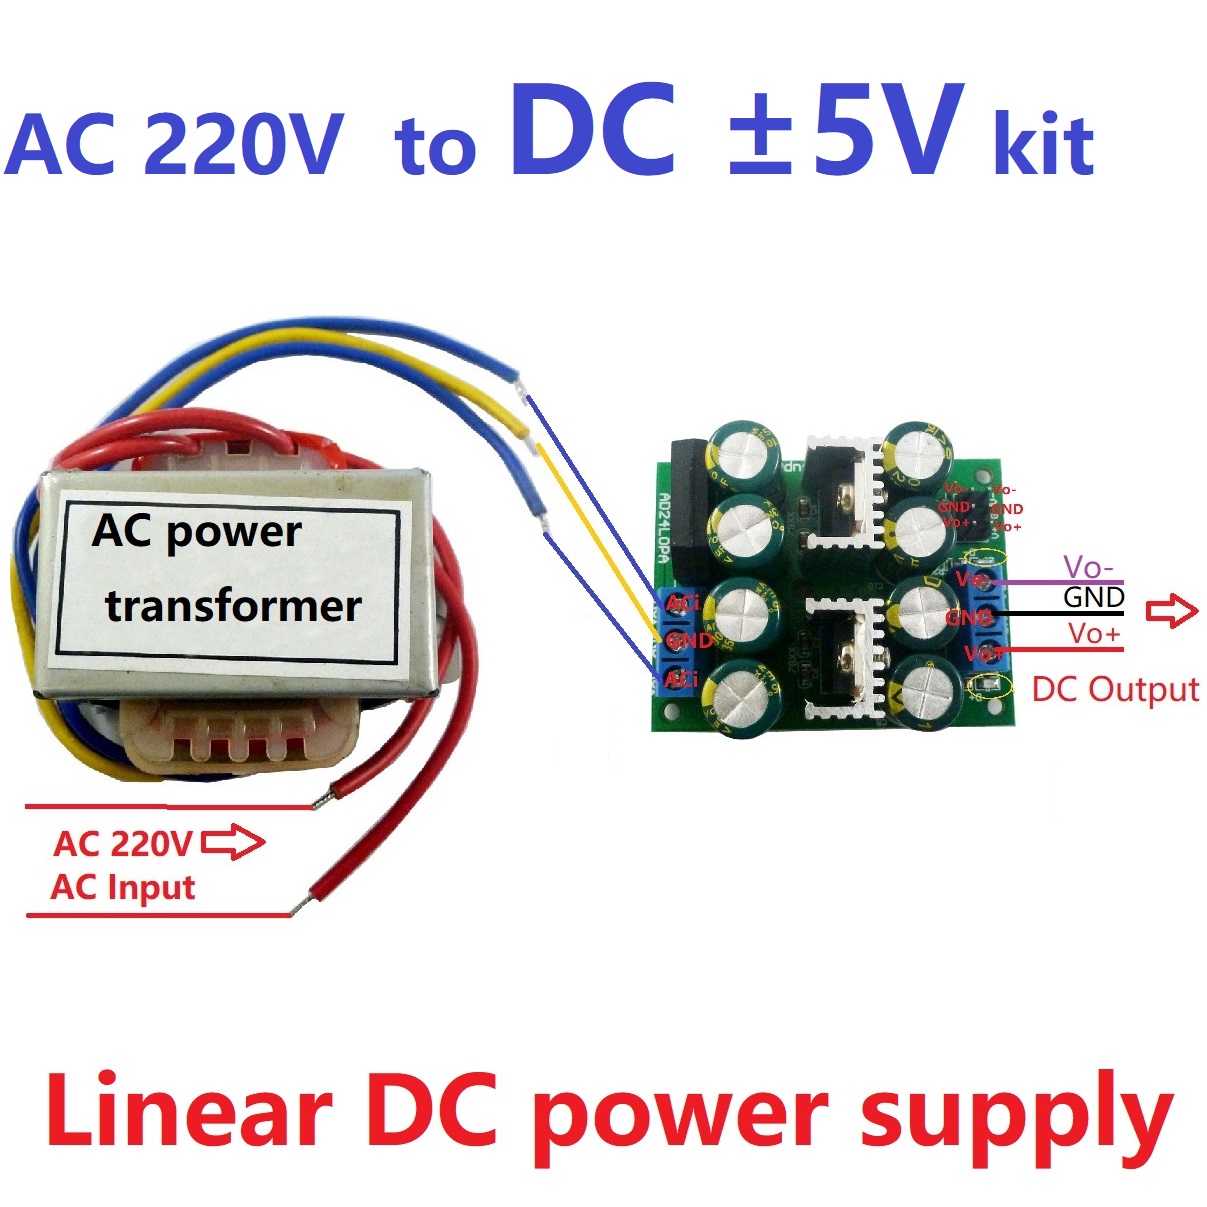 12W-AC220V-to-Dual-DC--5V12V15V-Low-Noise-Linear-Power-Supply-Kit-AC-DC-78XX-79XX-LDO-Module-for-Spe-1717974